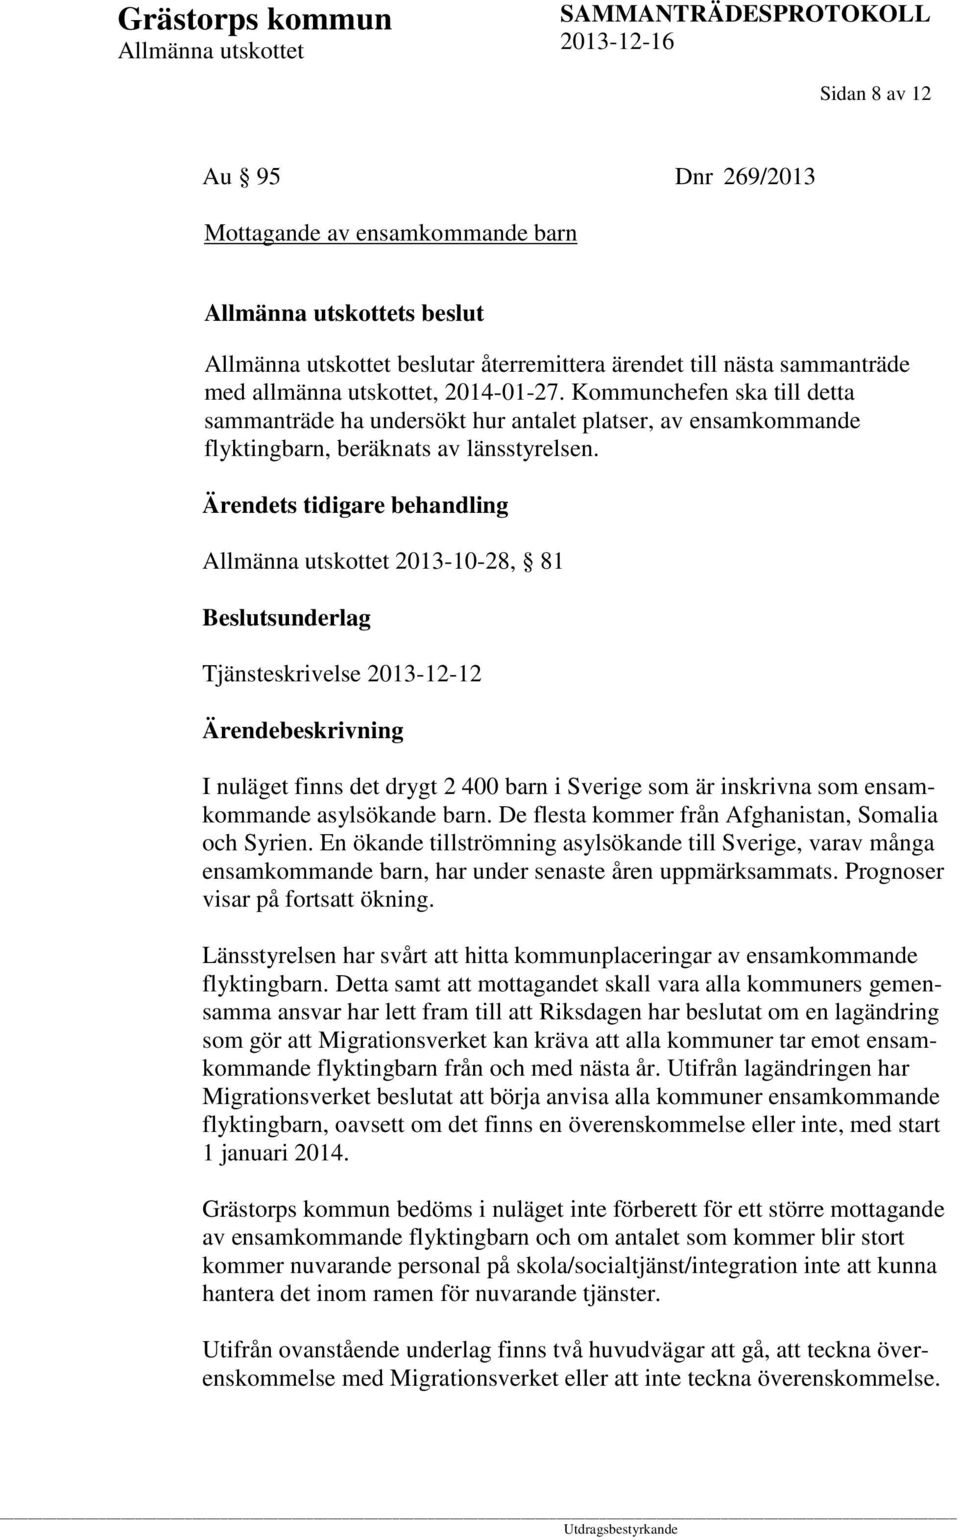 Ärendets tidigare behandling 2013-10-28, 81 Beslutsunderlag Tjänsteskrivelse 2013-12-12 I nuläget finns det drygt 2 400 barn i Sverige som är inskrivna som ensamkommande asylsökande barn.